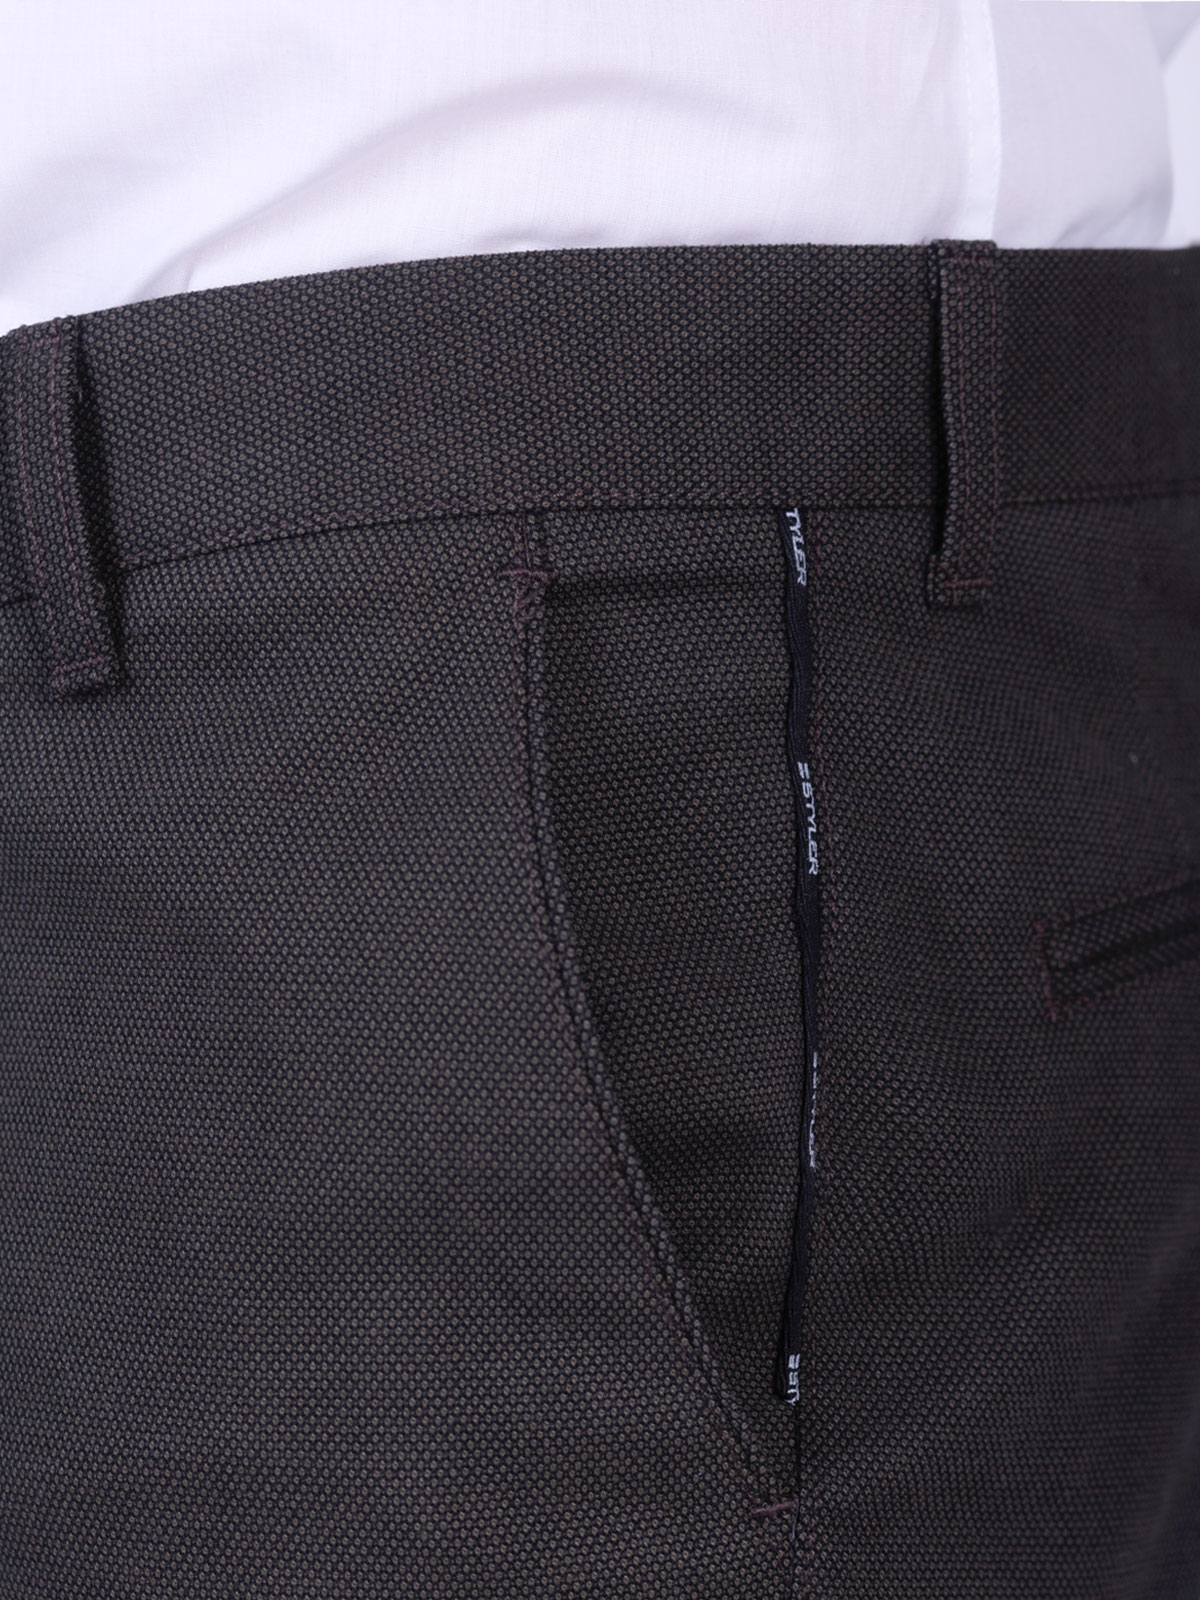 Παντελόνι σε σκούρο χακί χρώμα - 60303 € 66.37 img3